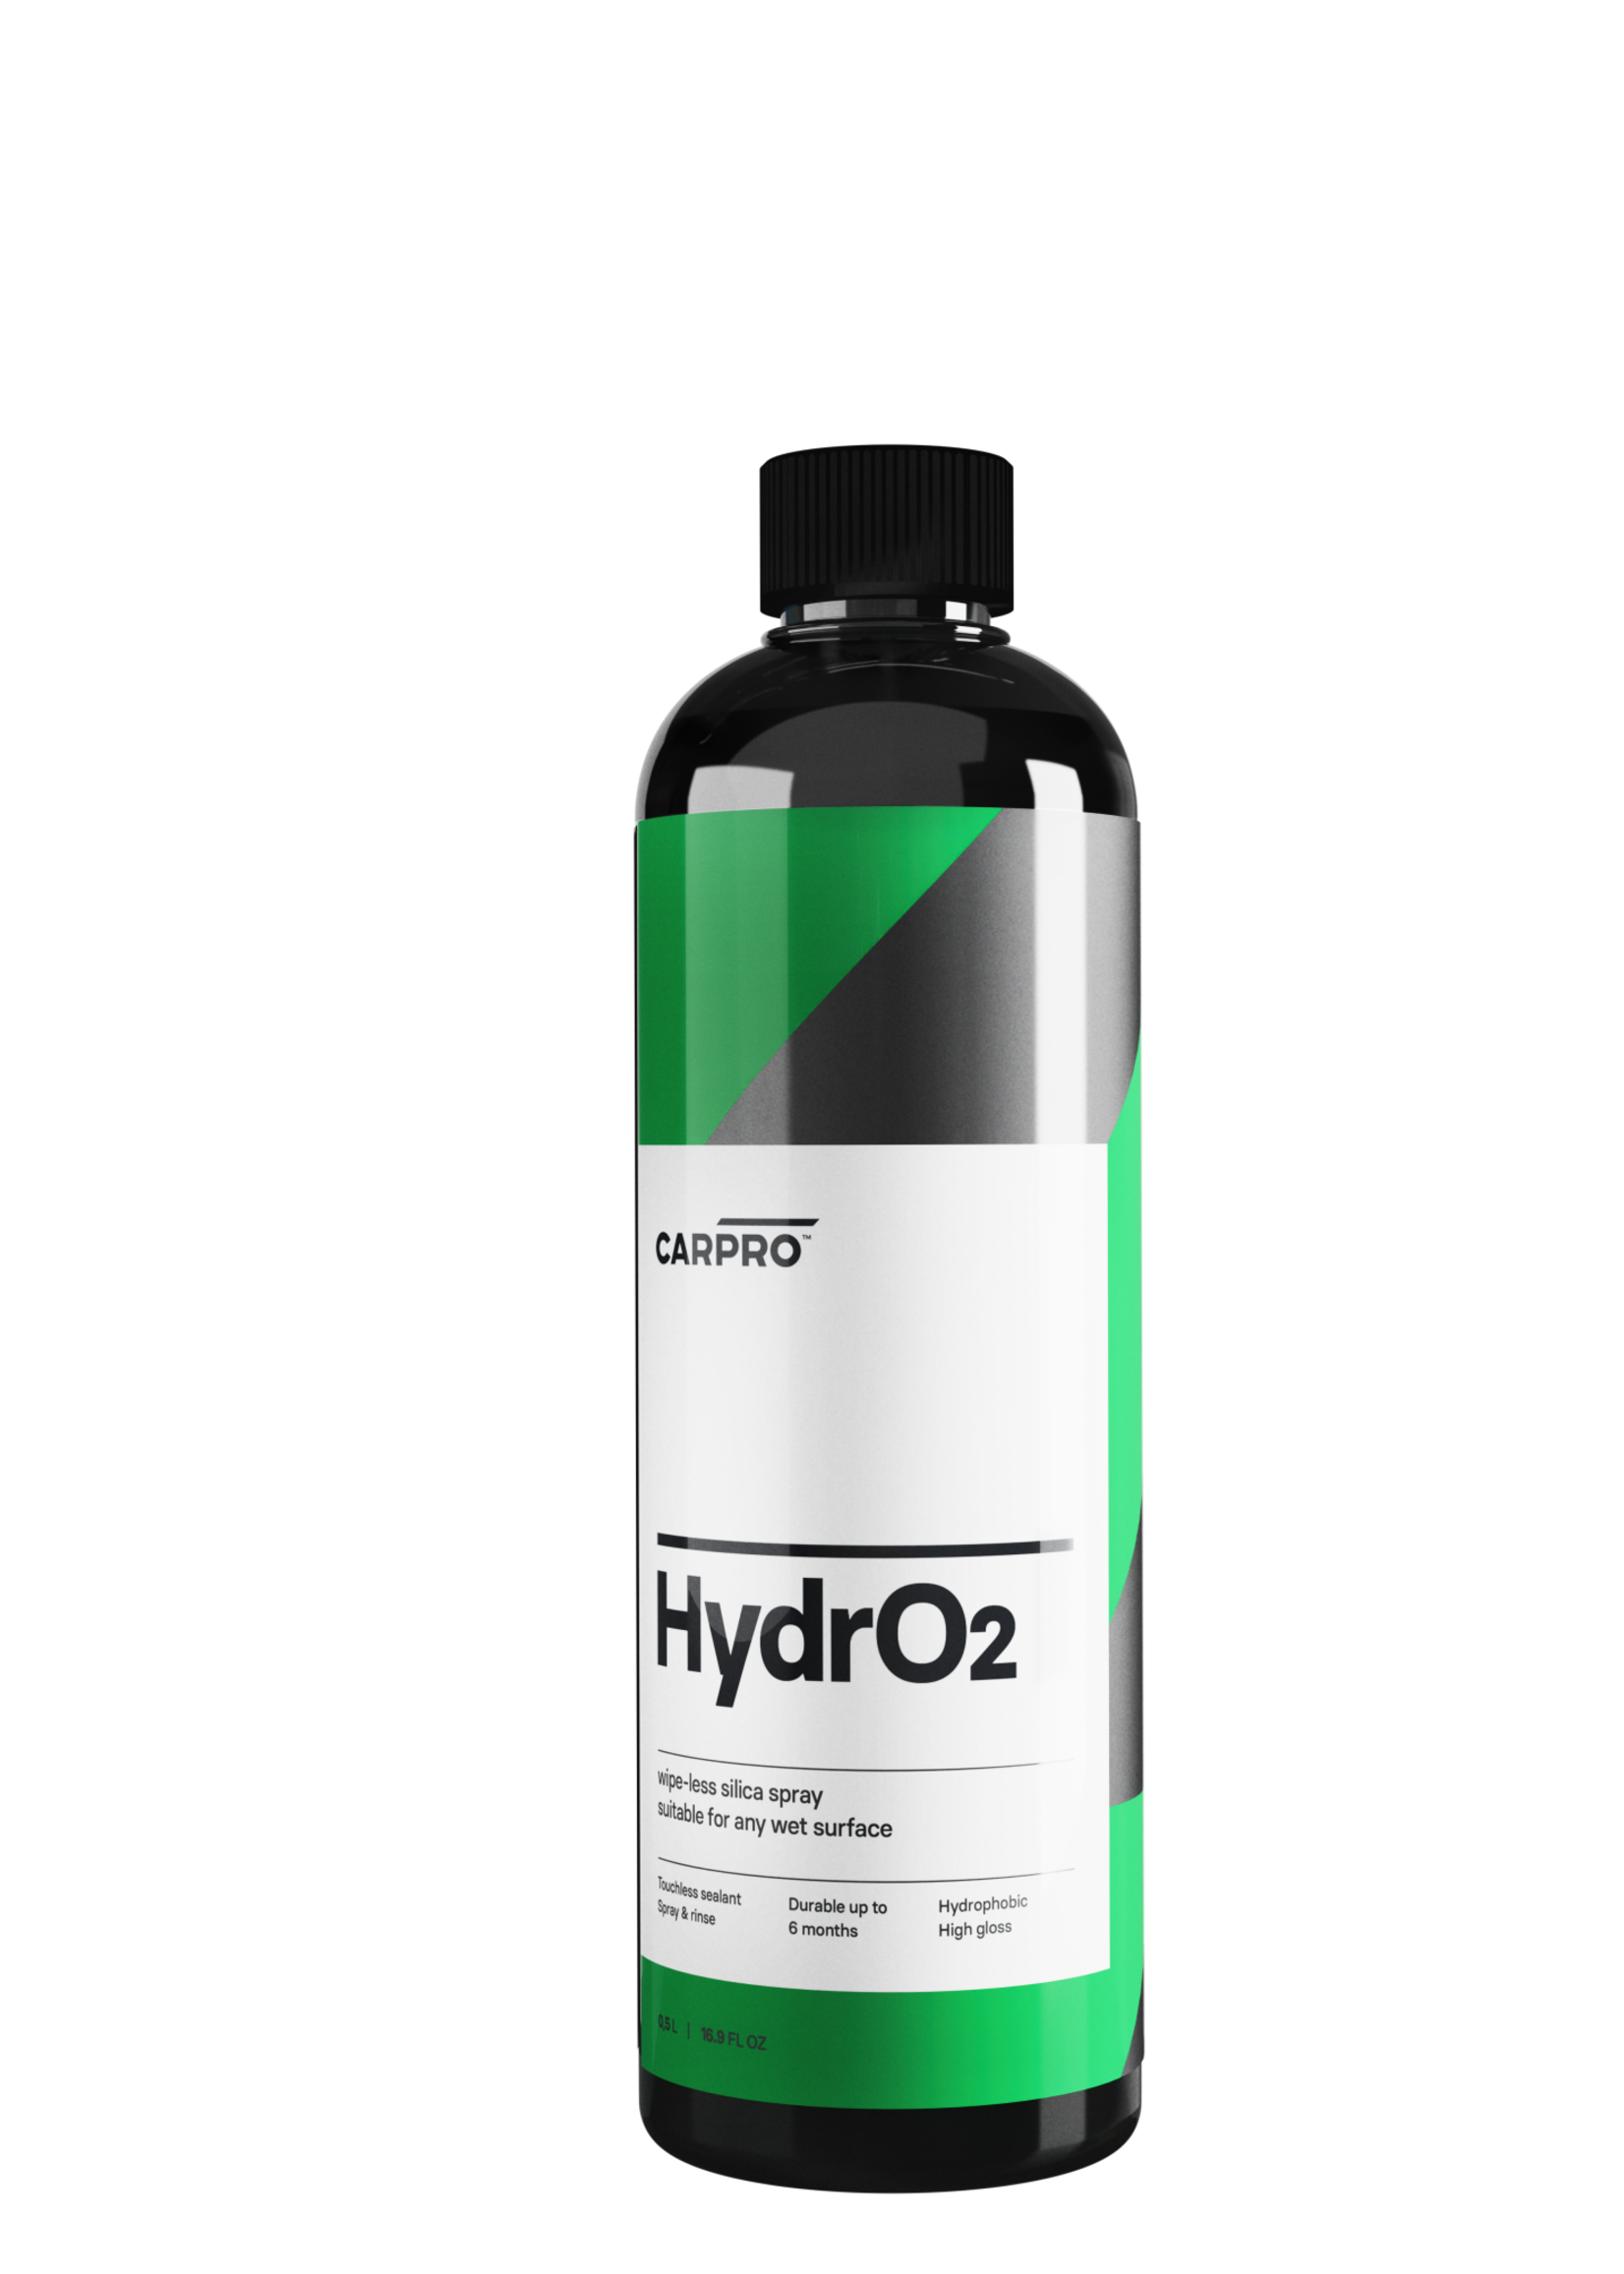 CARPRO HydrO2 Silica Sealant Concentrate